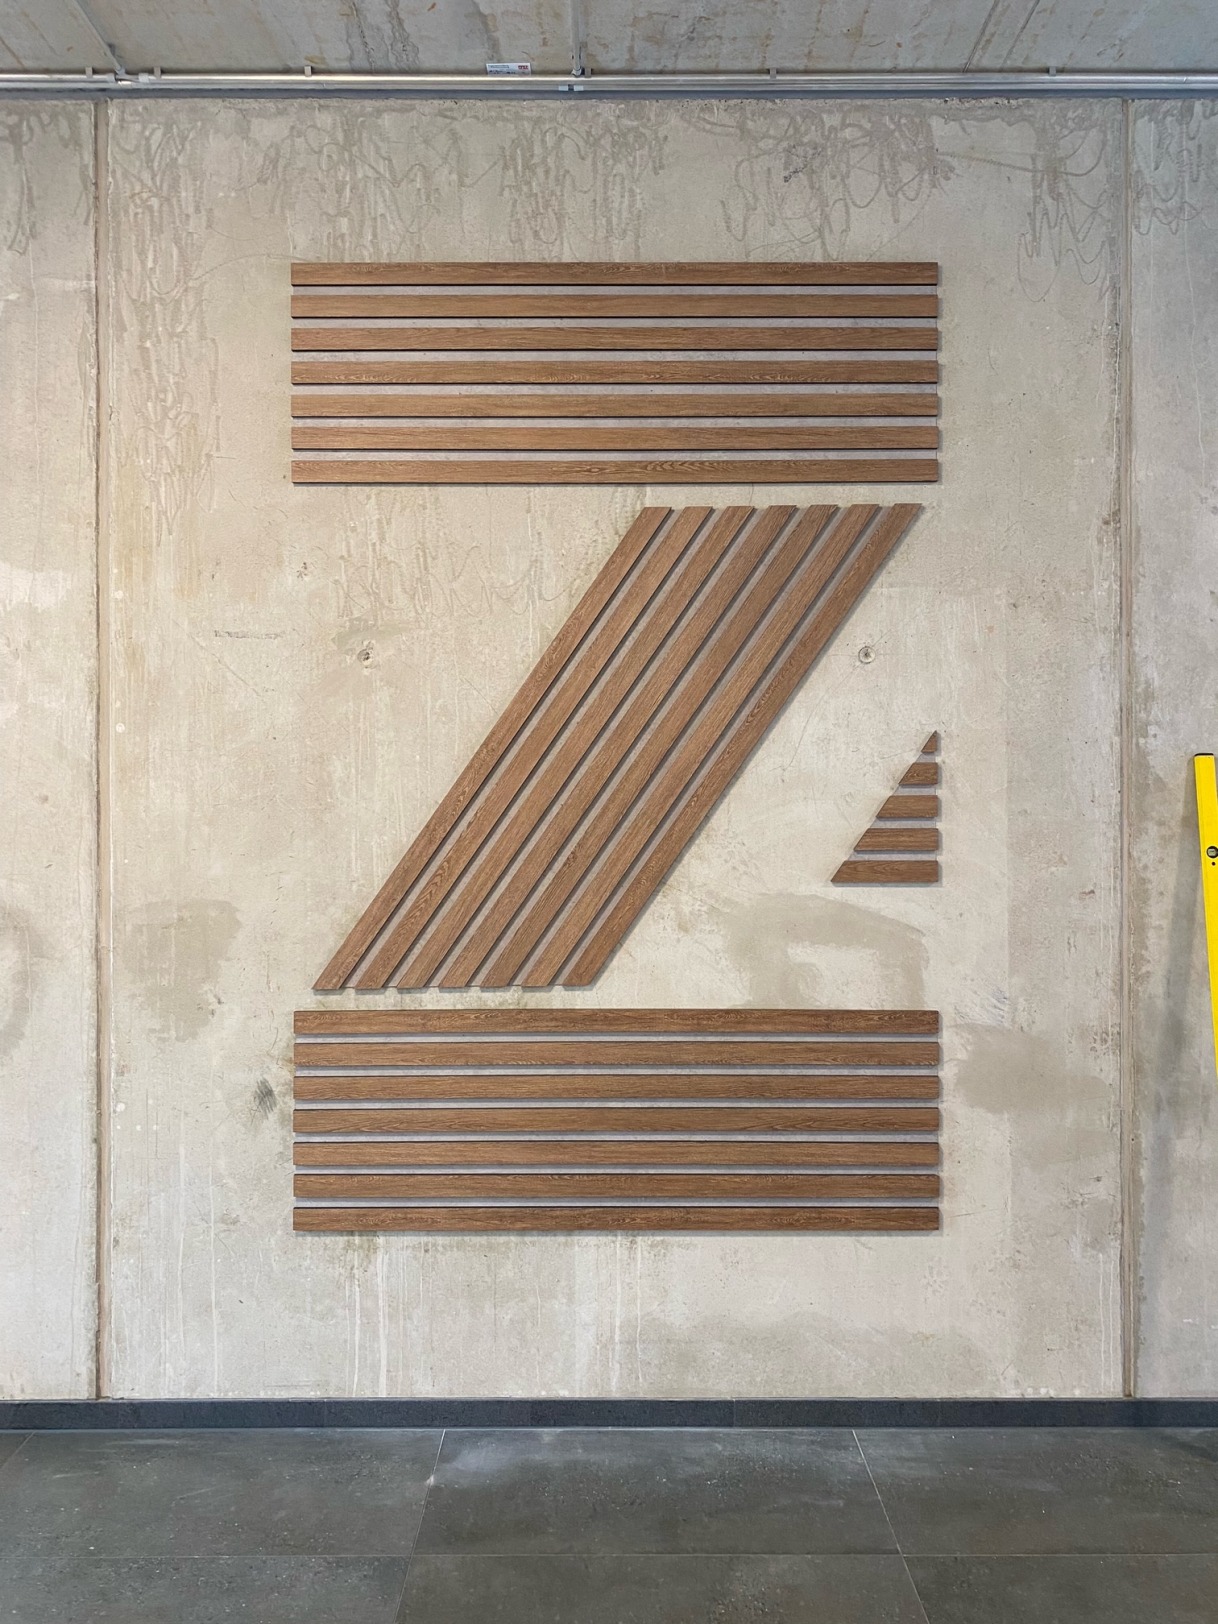 z4 logo image9